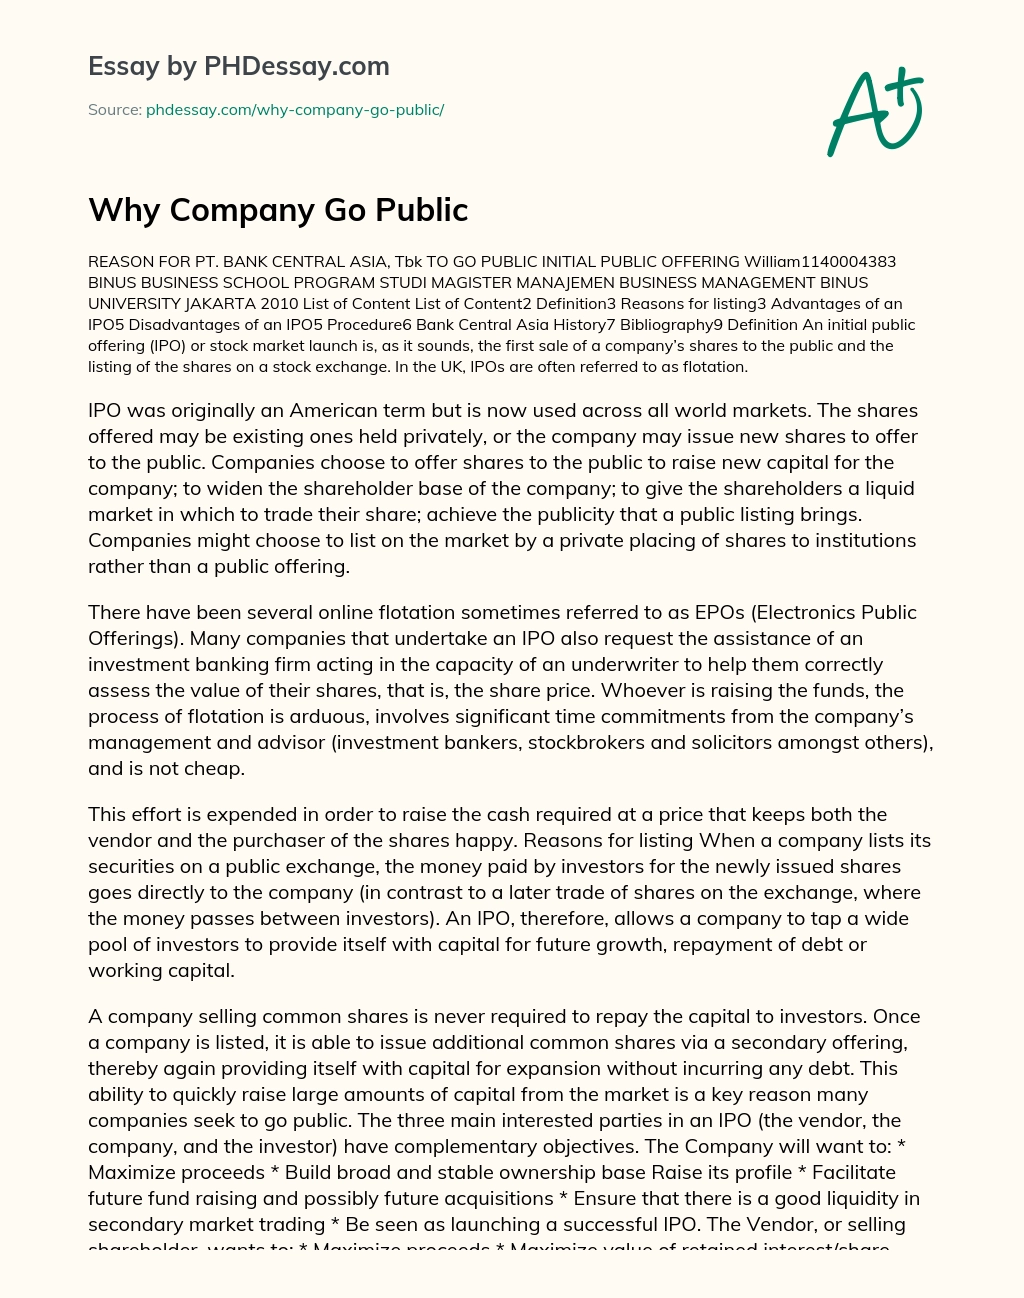 Why Company Go Public essay